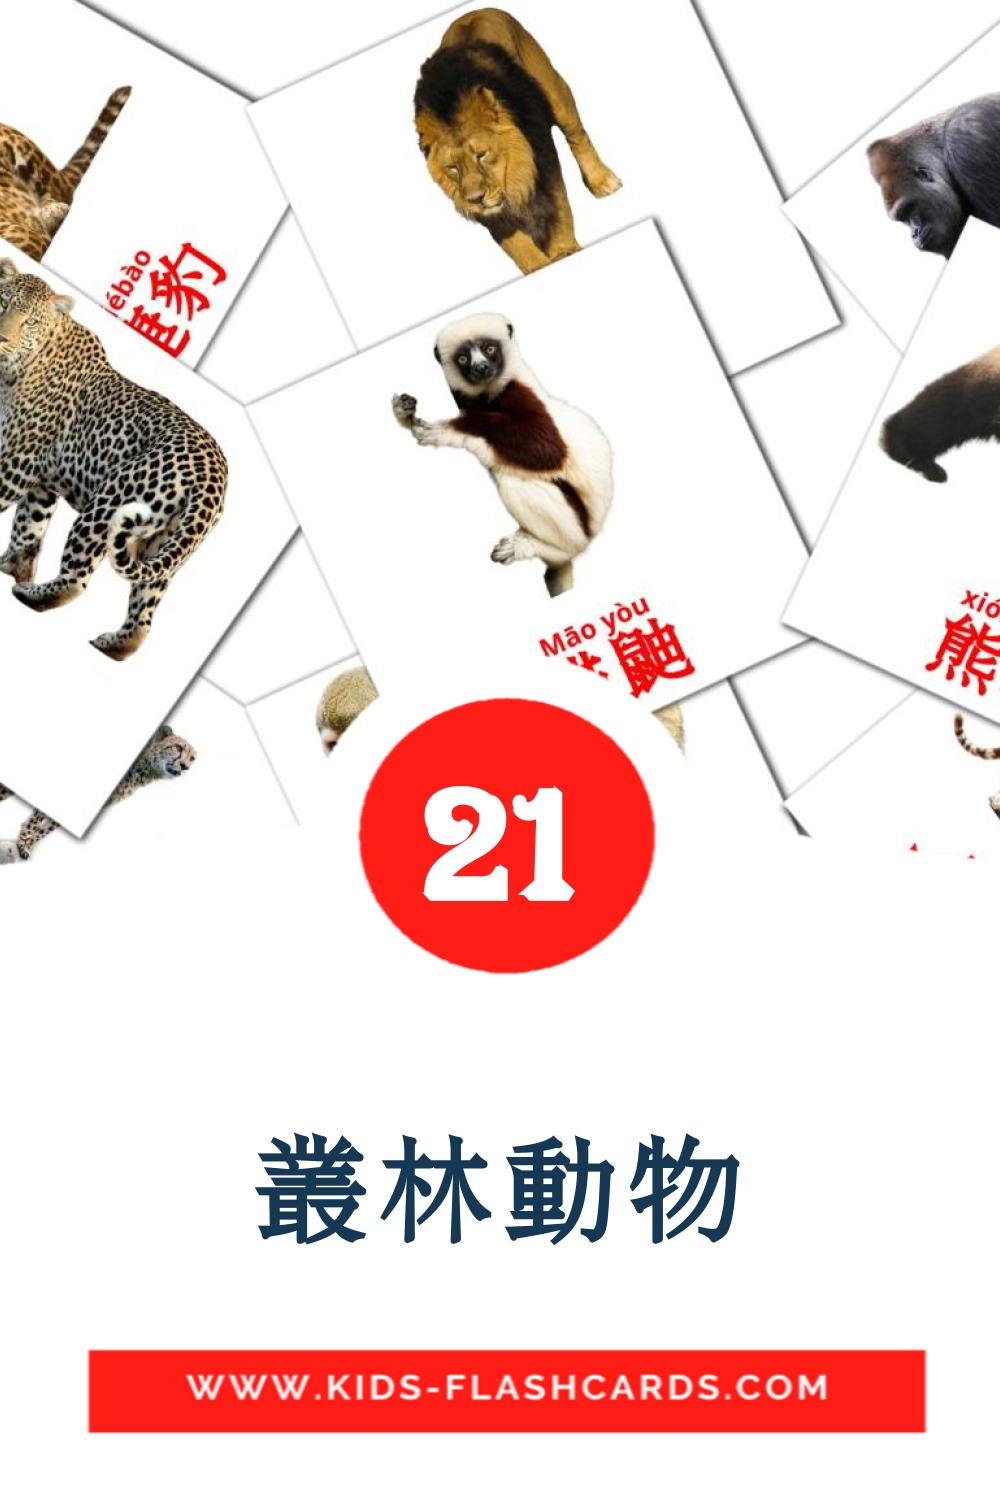 21 叢林動物 fotokaarten voor kleuters in het kantonees(informeel)